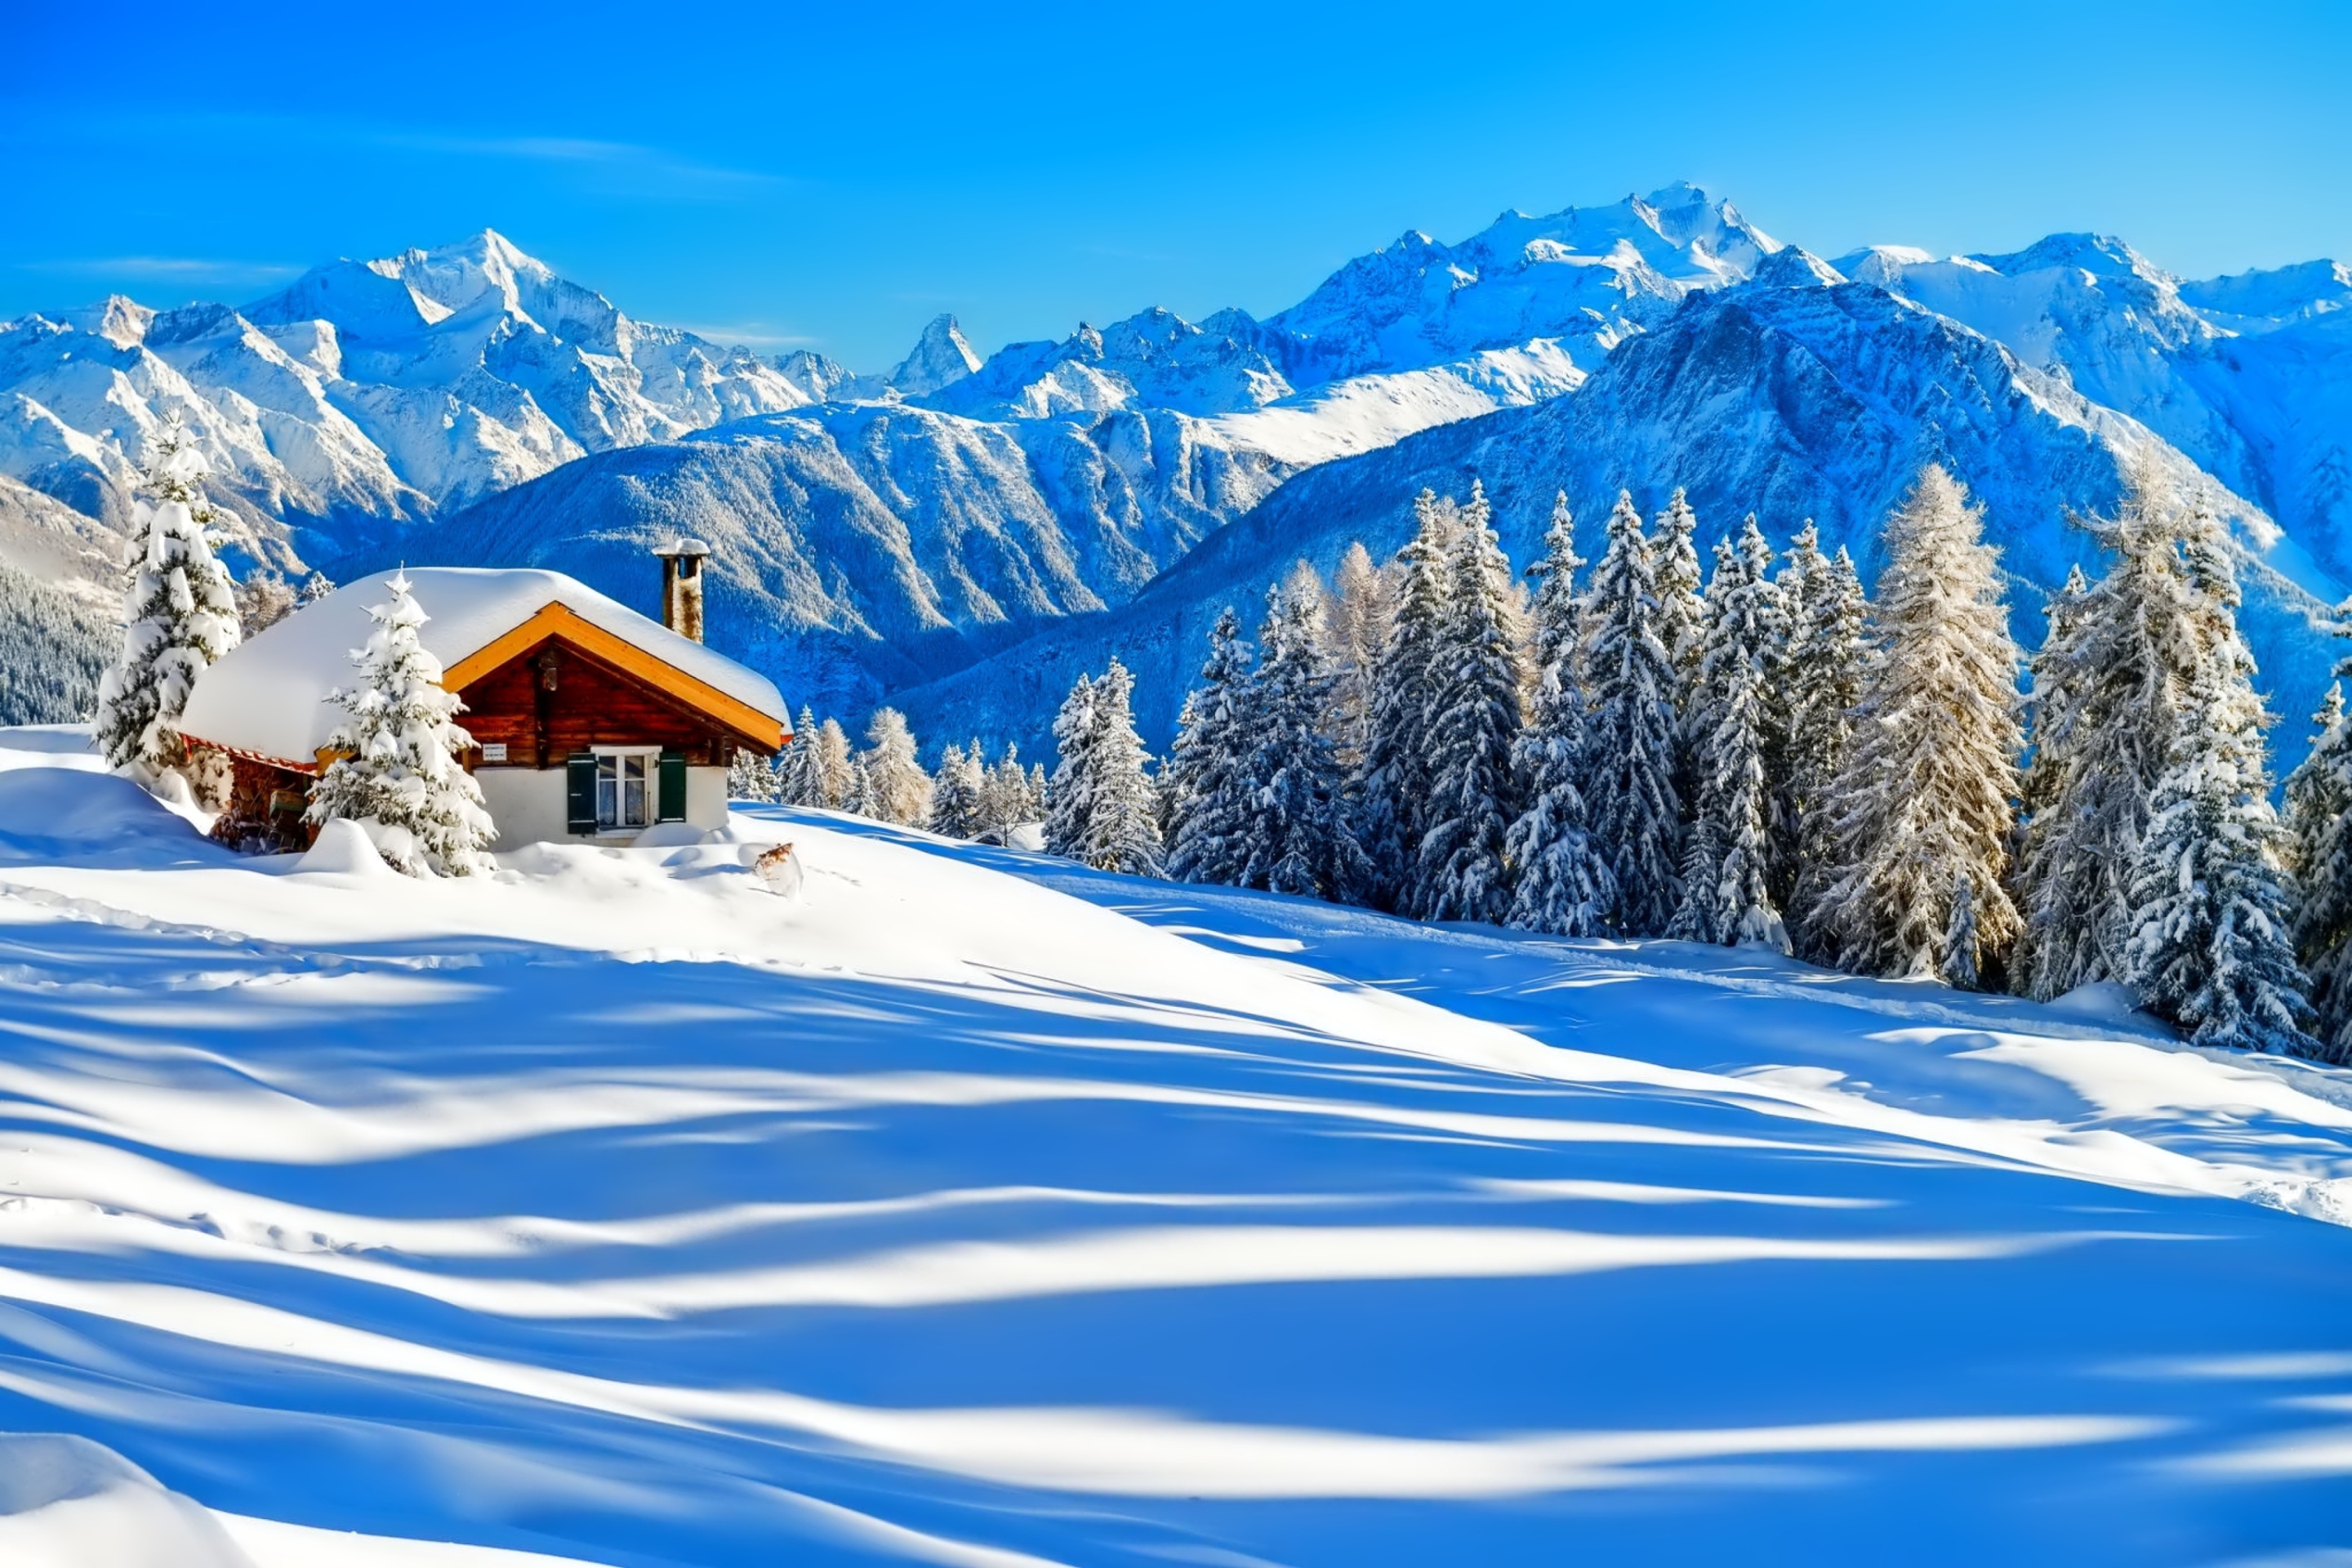 Switzerland Alps in Winter screenshot #1 2880x1920